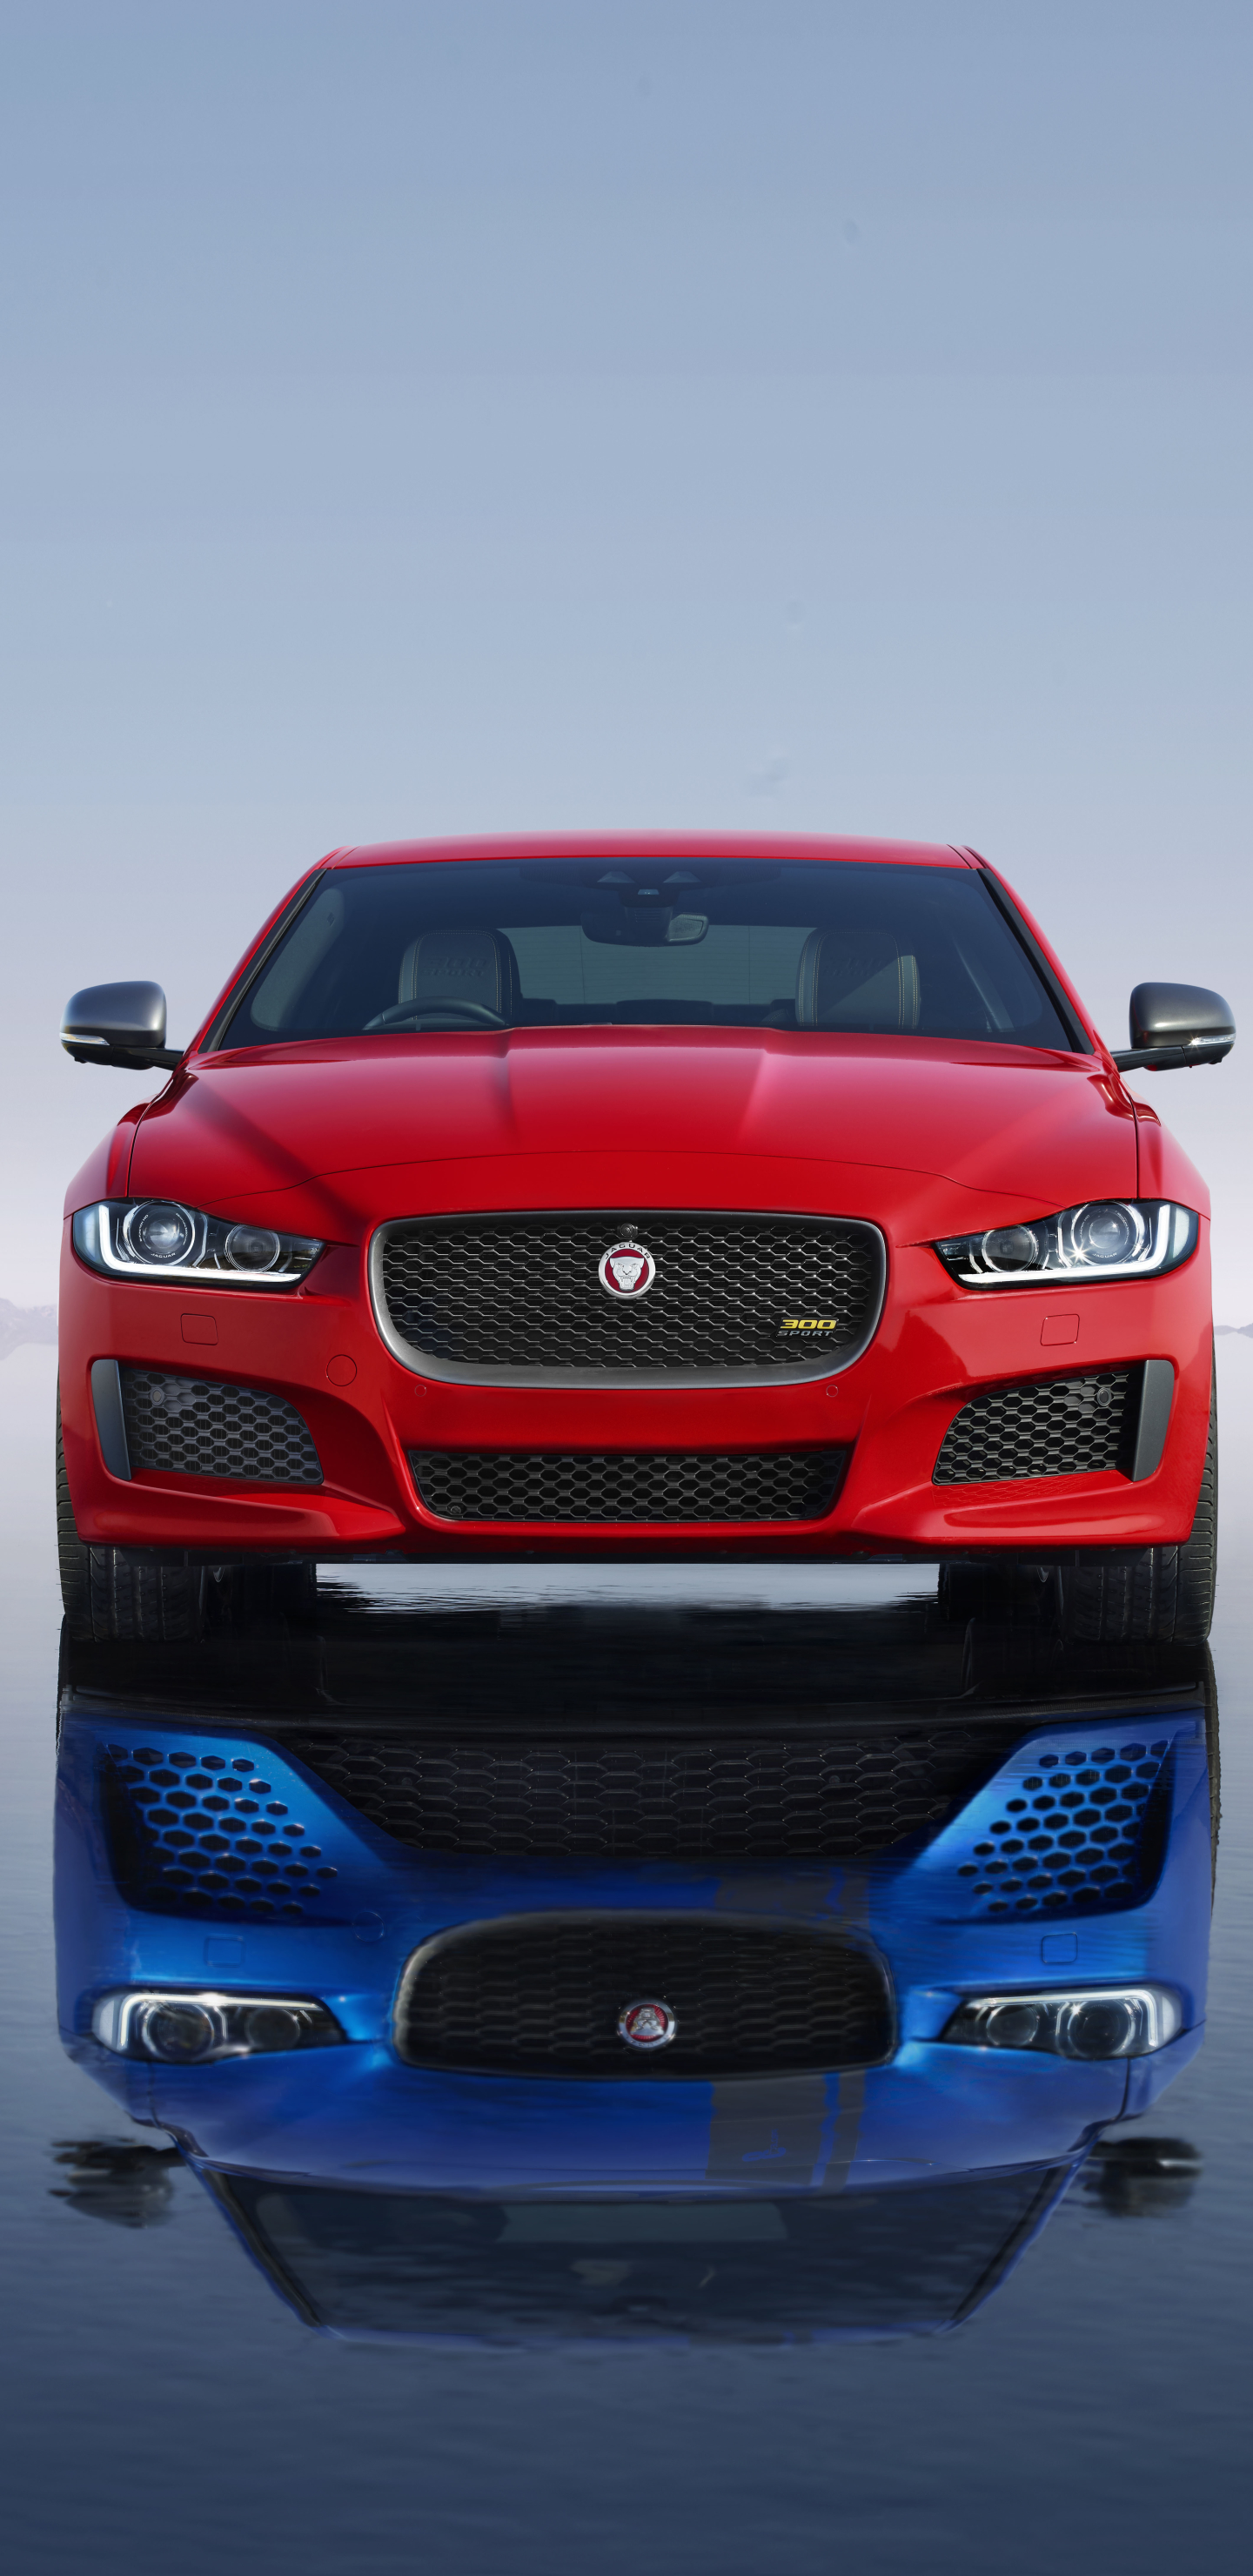 Free download wallpaper Jaguar, Reflection, Car, Jaguar Xe, Vehicle, Vehicles, Jaguar Cars on your PC desktop